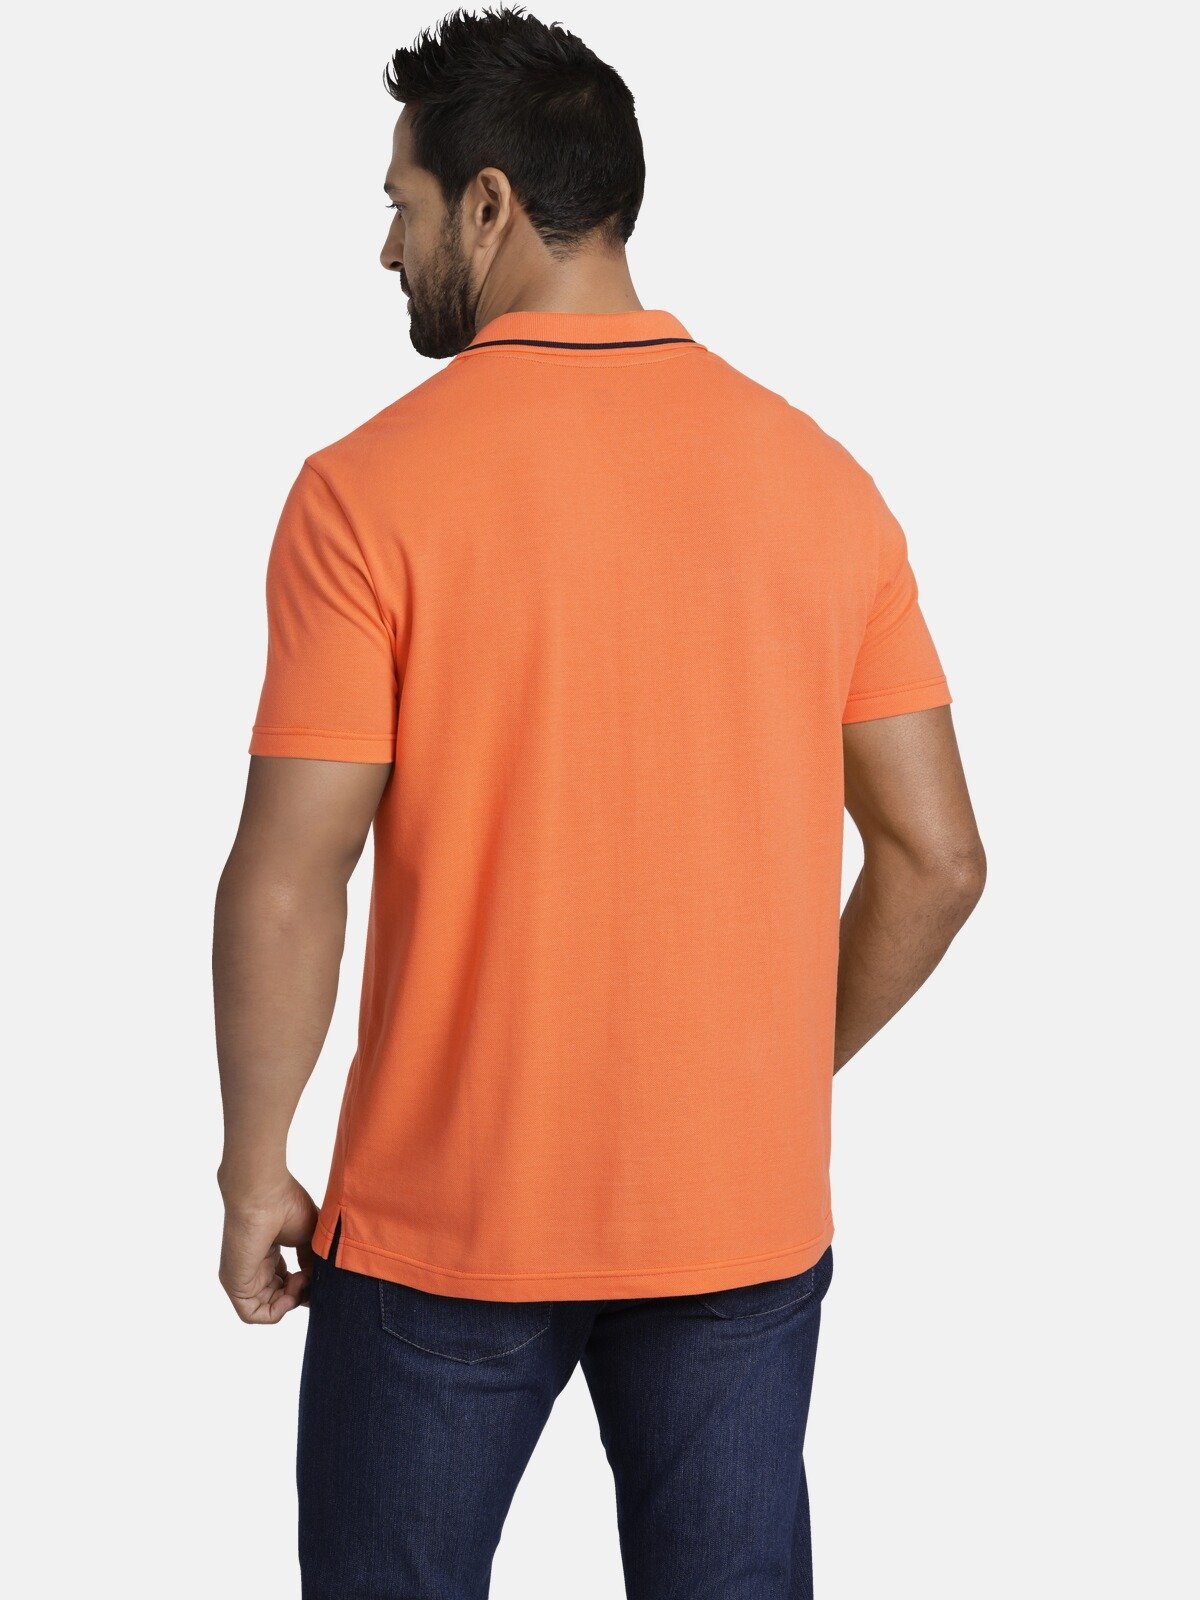 Jan Vanderstorm Poloshirt HALLFRED Poloshirt detailreiches orange